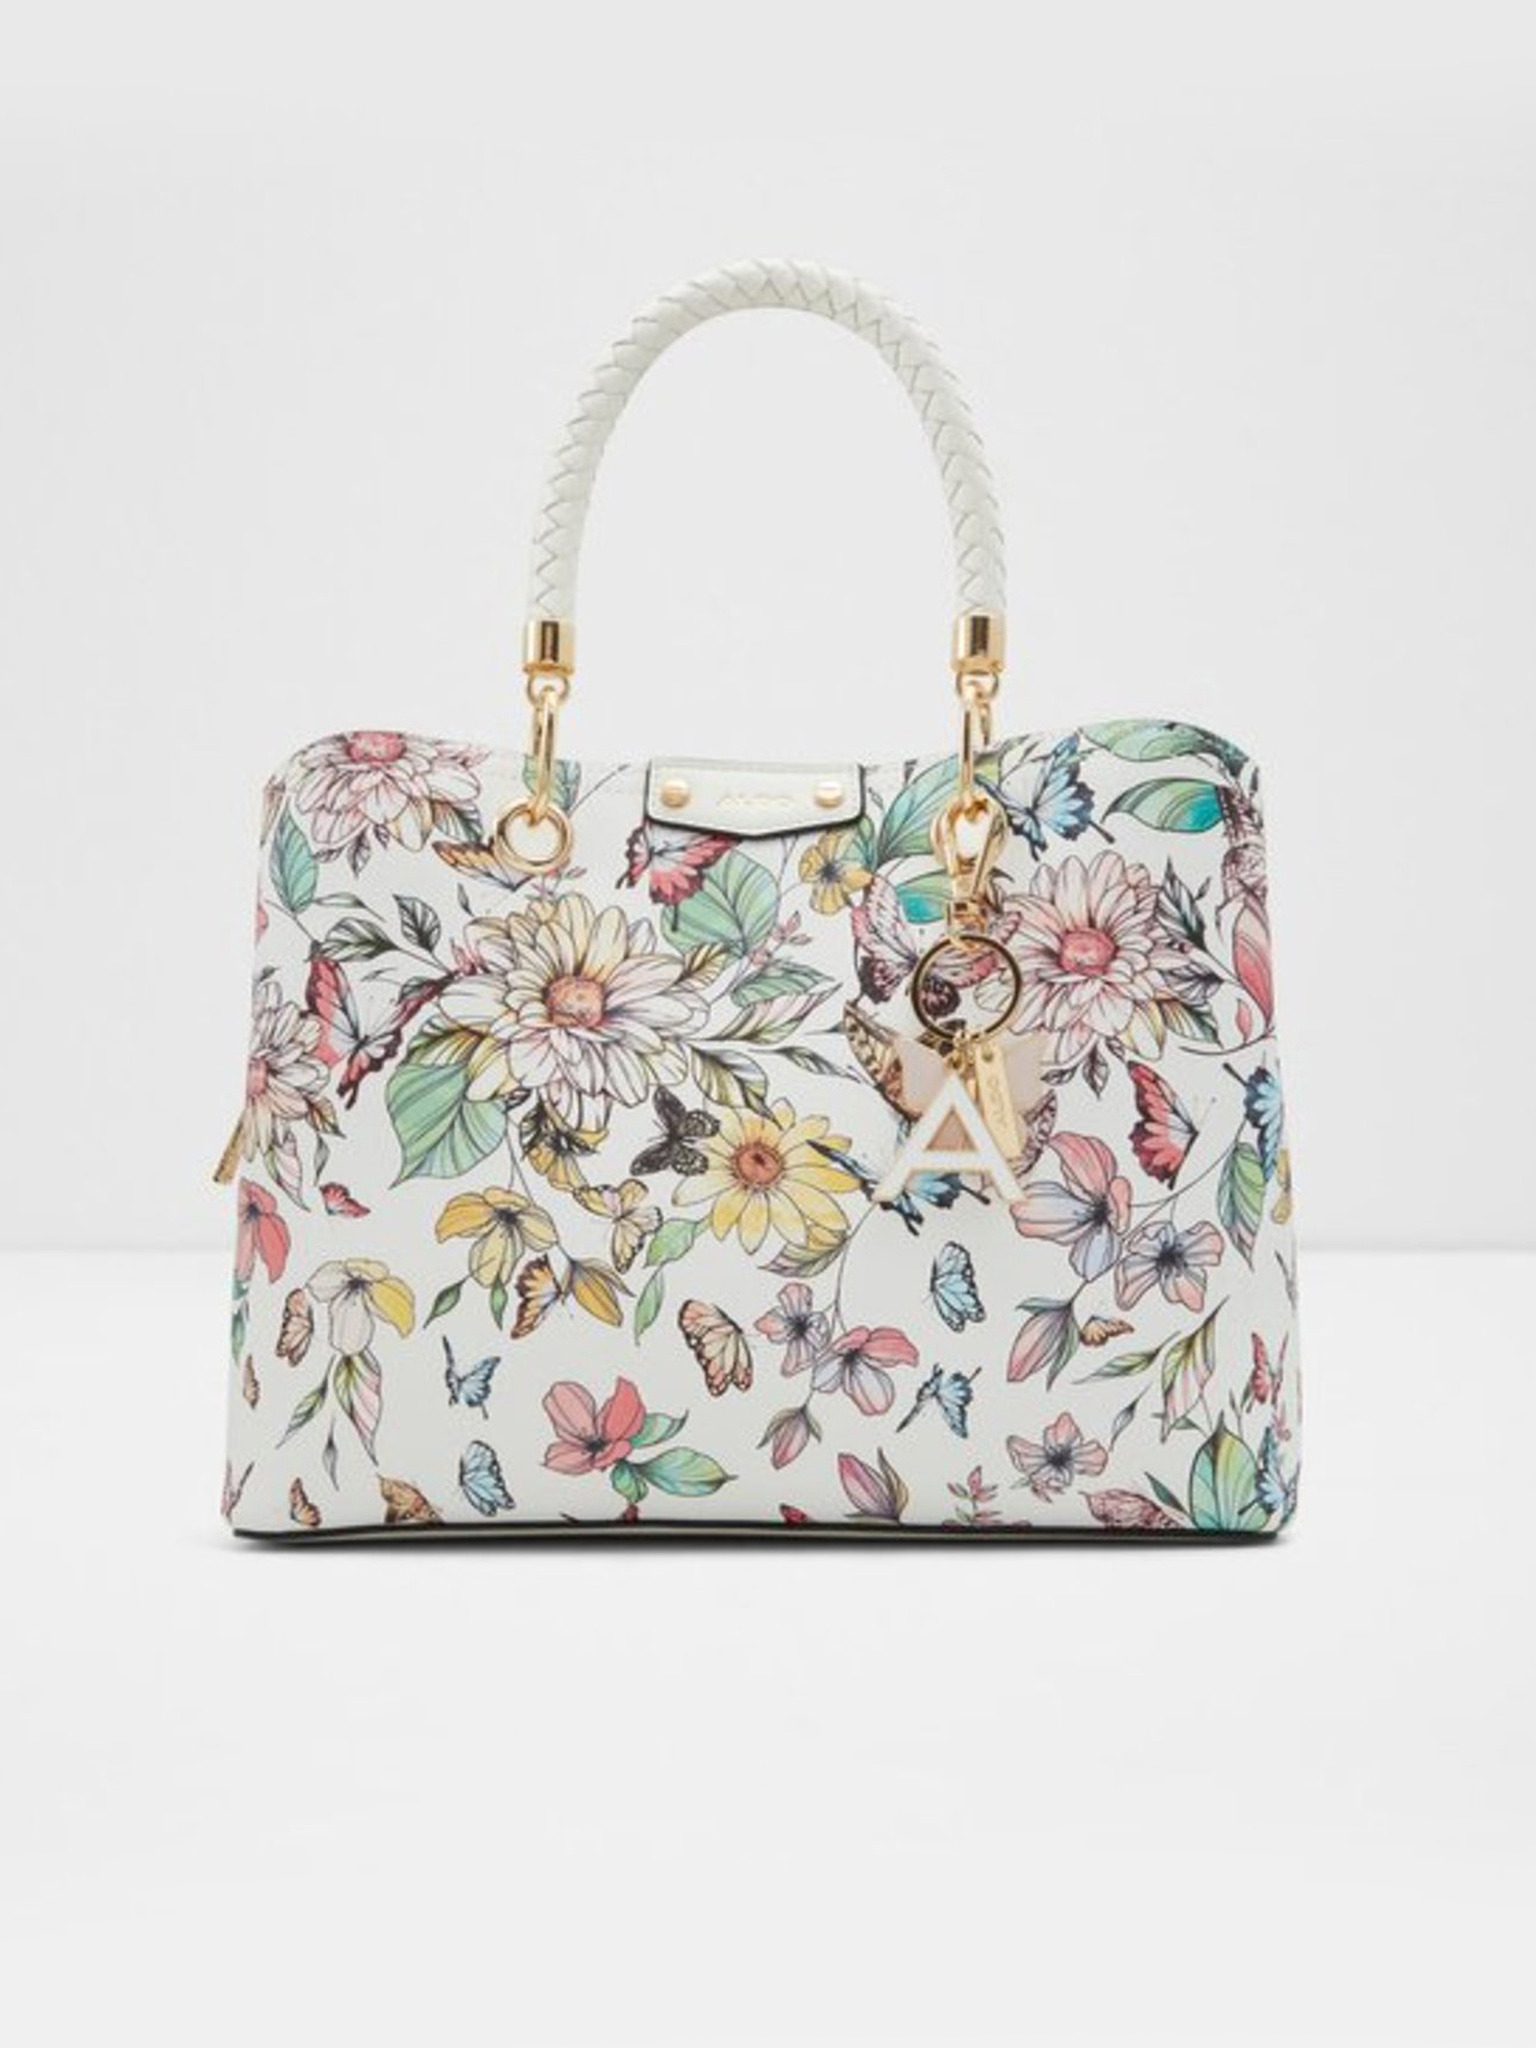 Aldo Handbag Shoulder Bag, Beautiful Condition